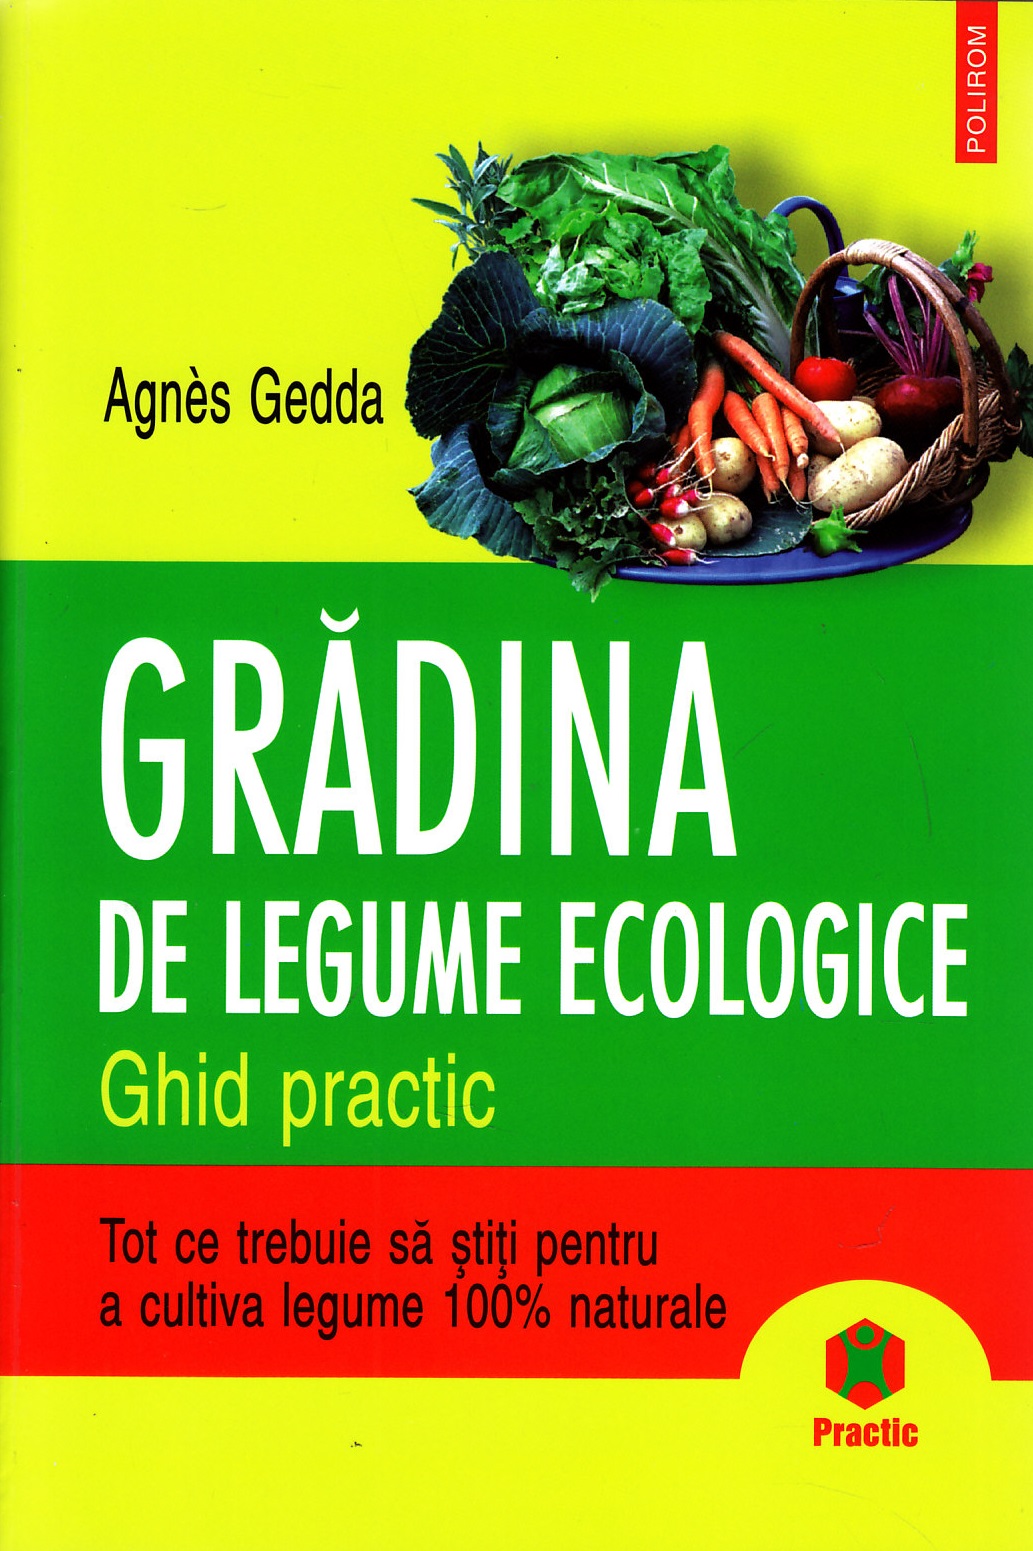 Gradina de legume ecologice - Agnes Gedda